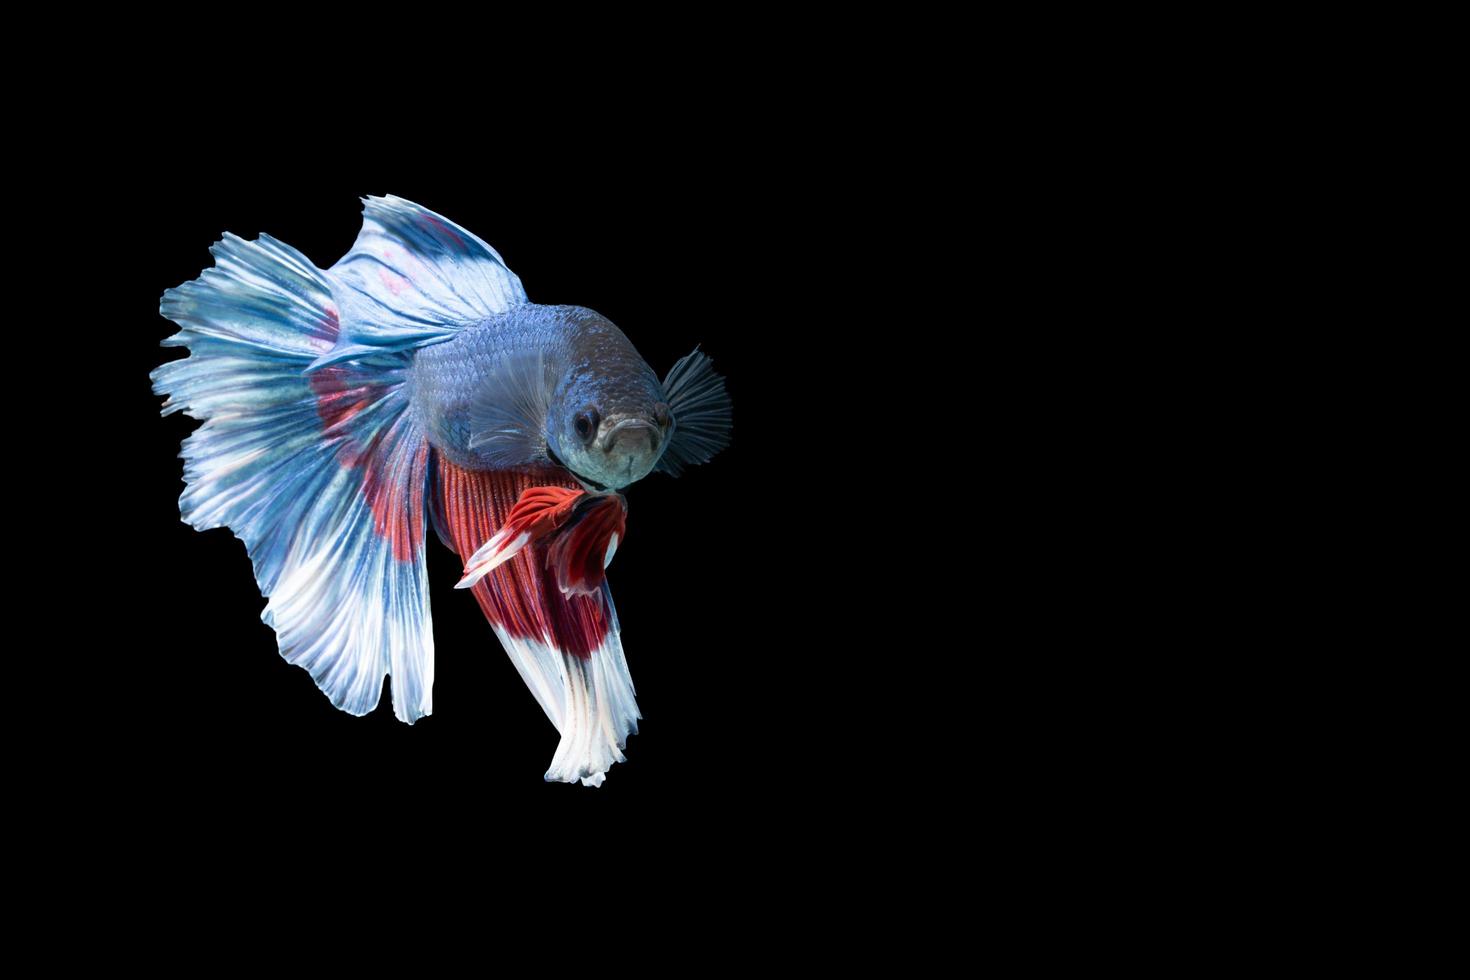 halfmoon betta-vis met blauwe en rode strepen foto